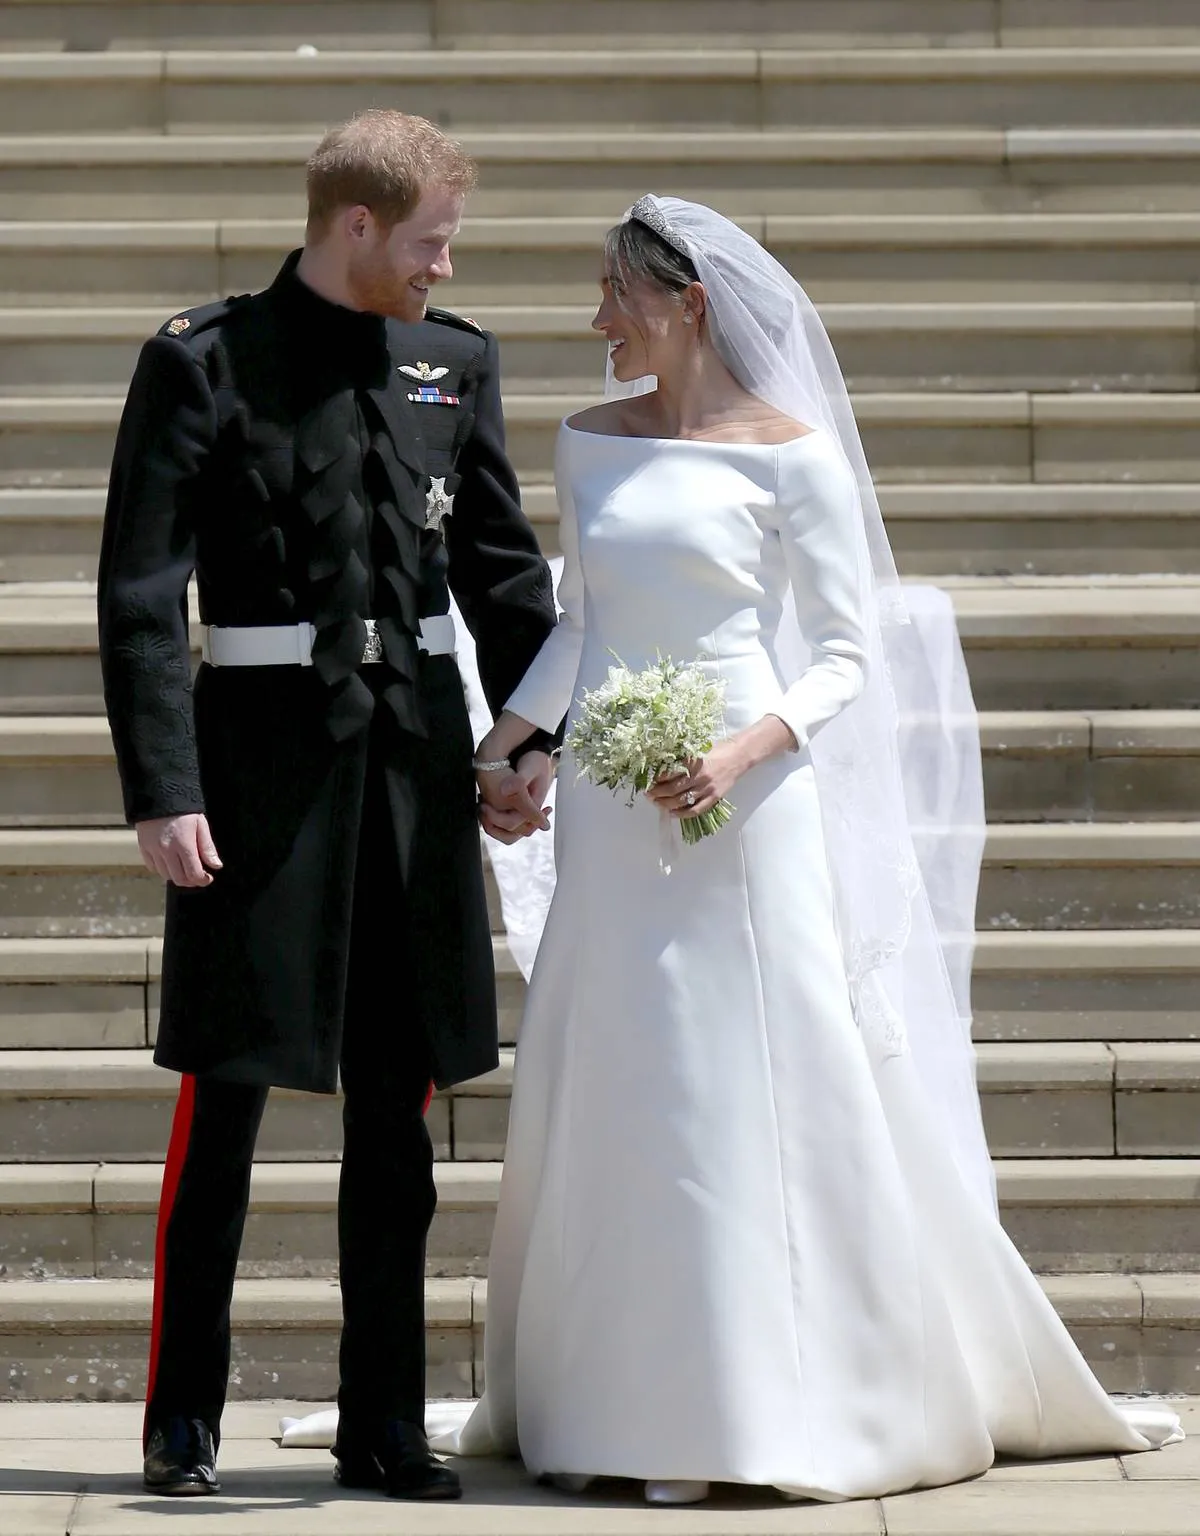 May 2018: The Royal Wedding